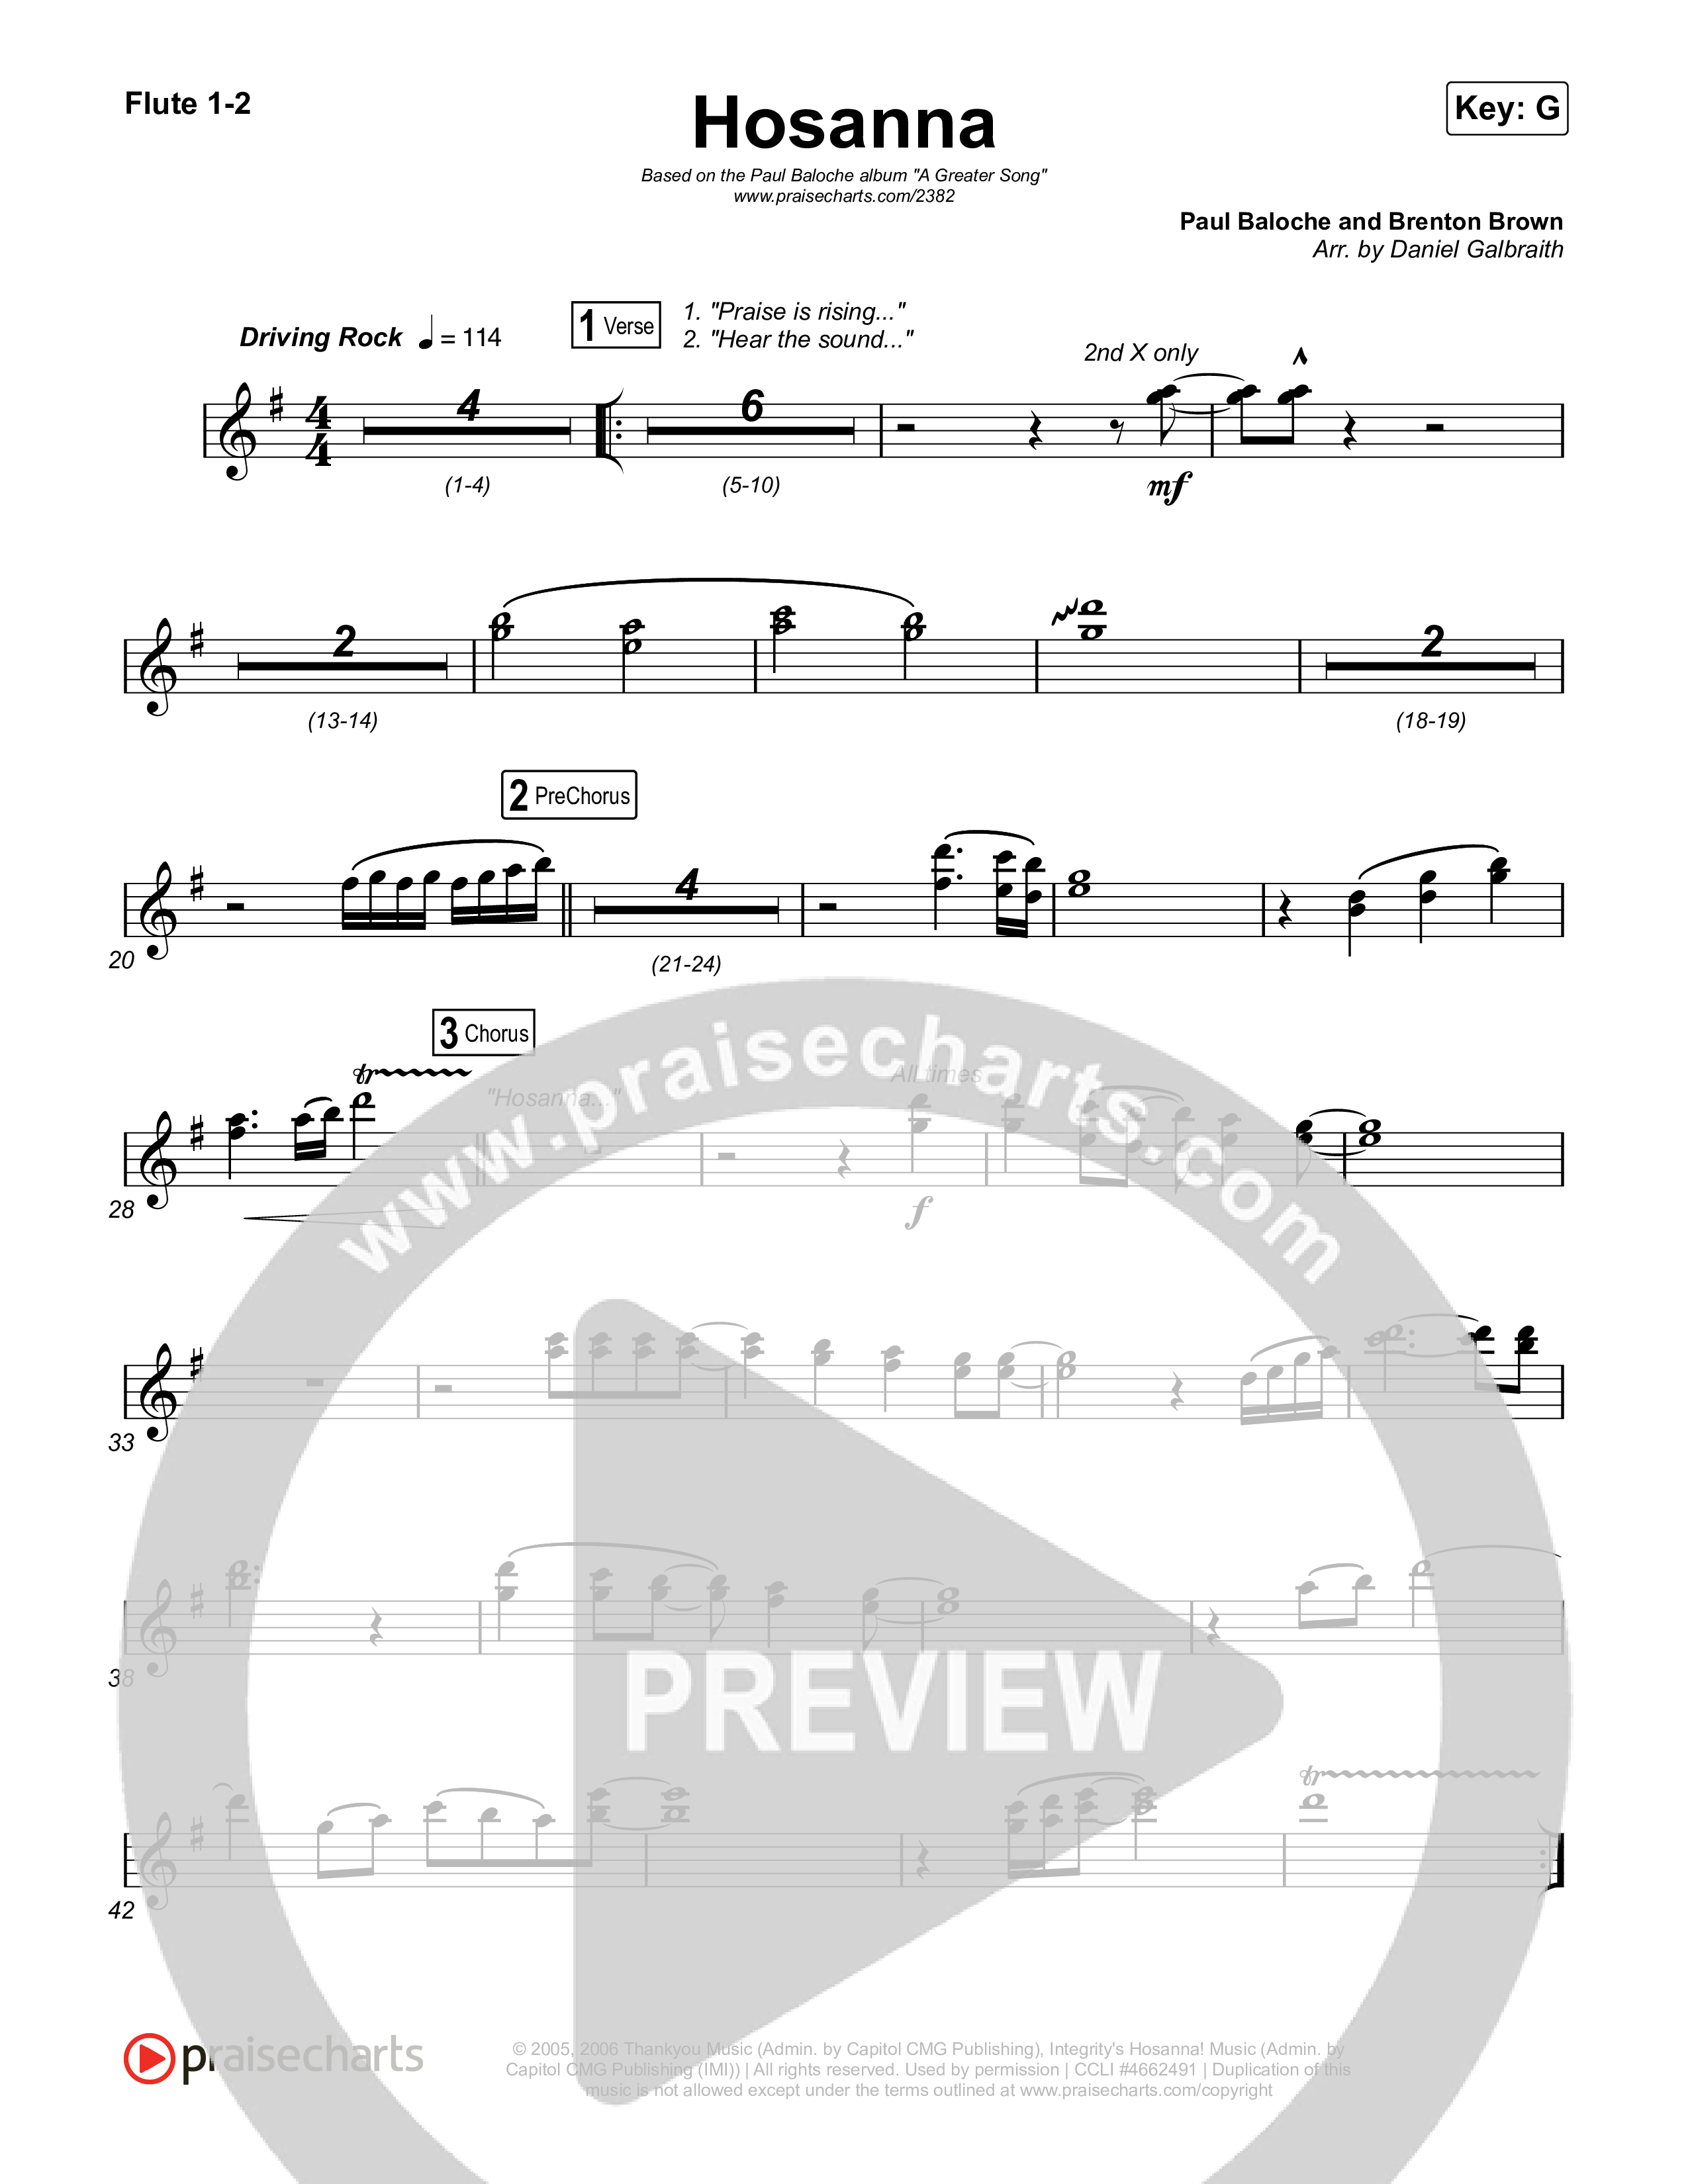 Hosanna (Praise Is Rising) Flute 1/2 (Paul Baloche)